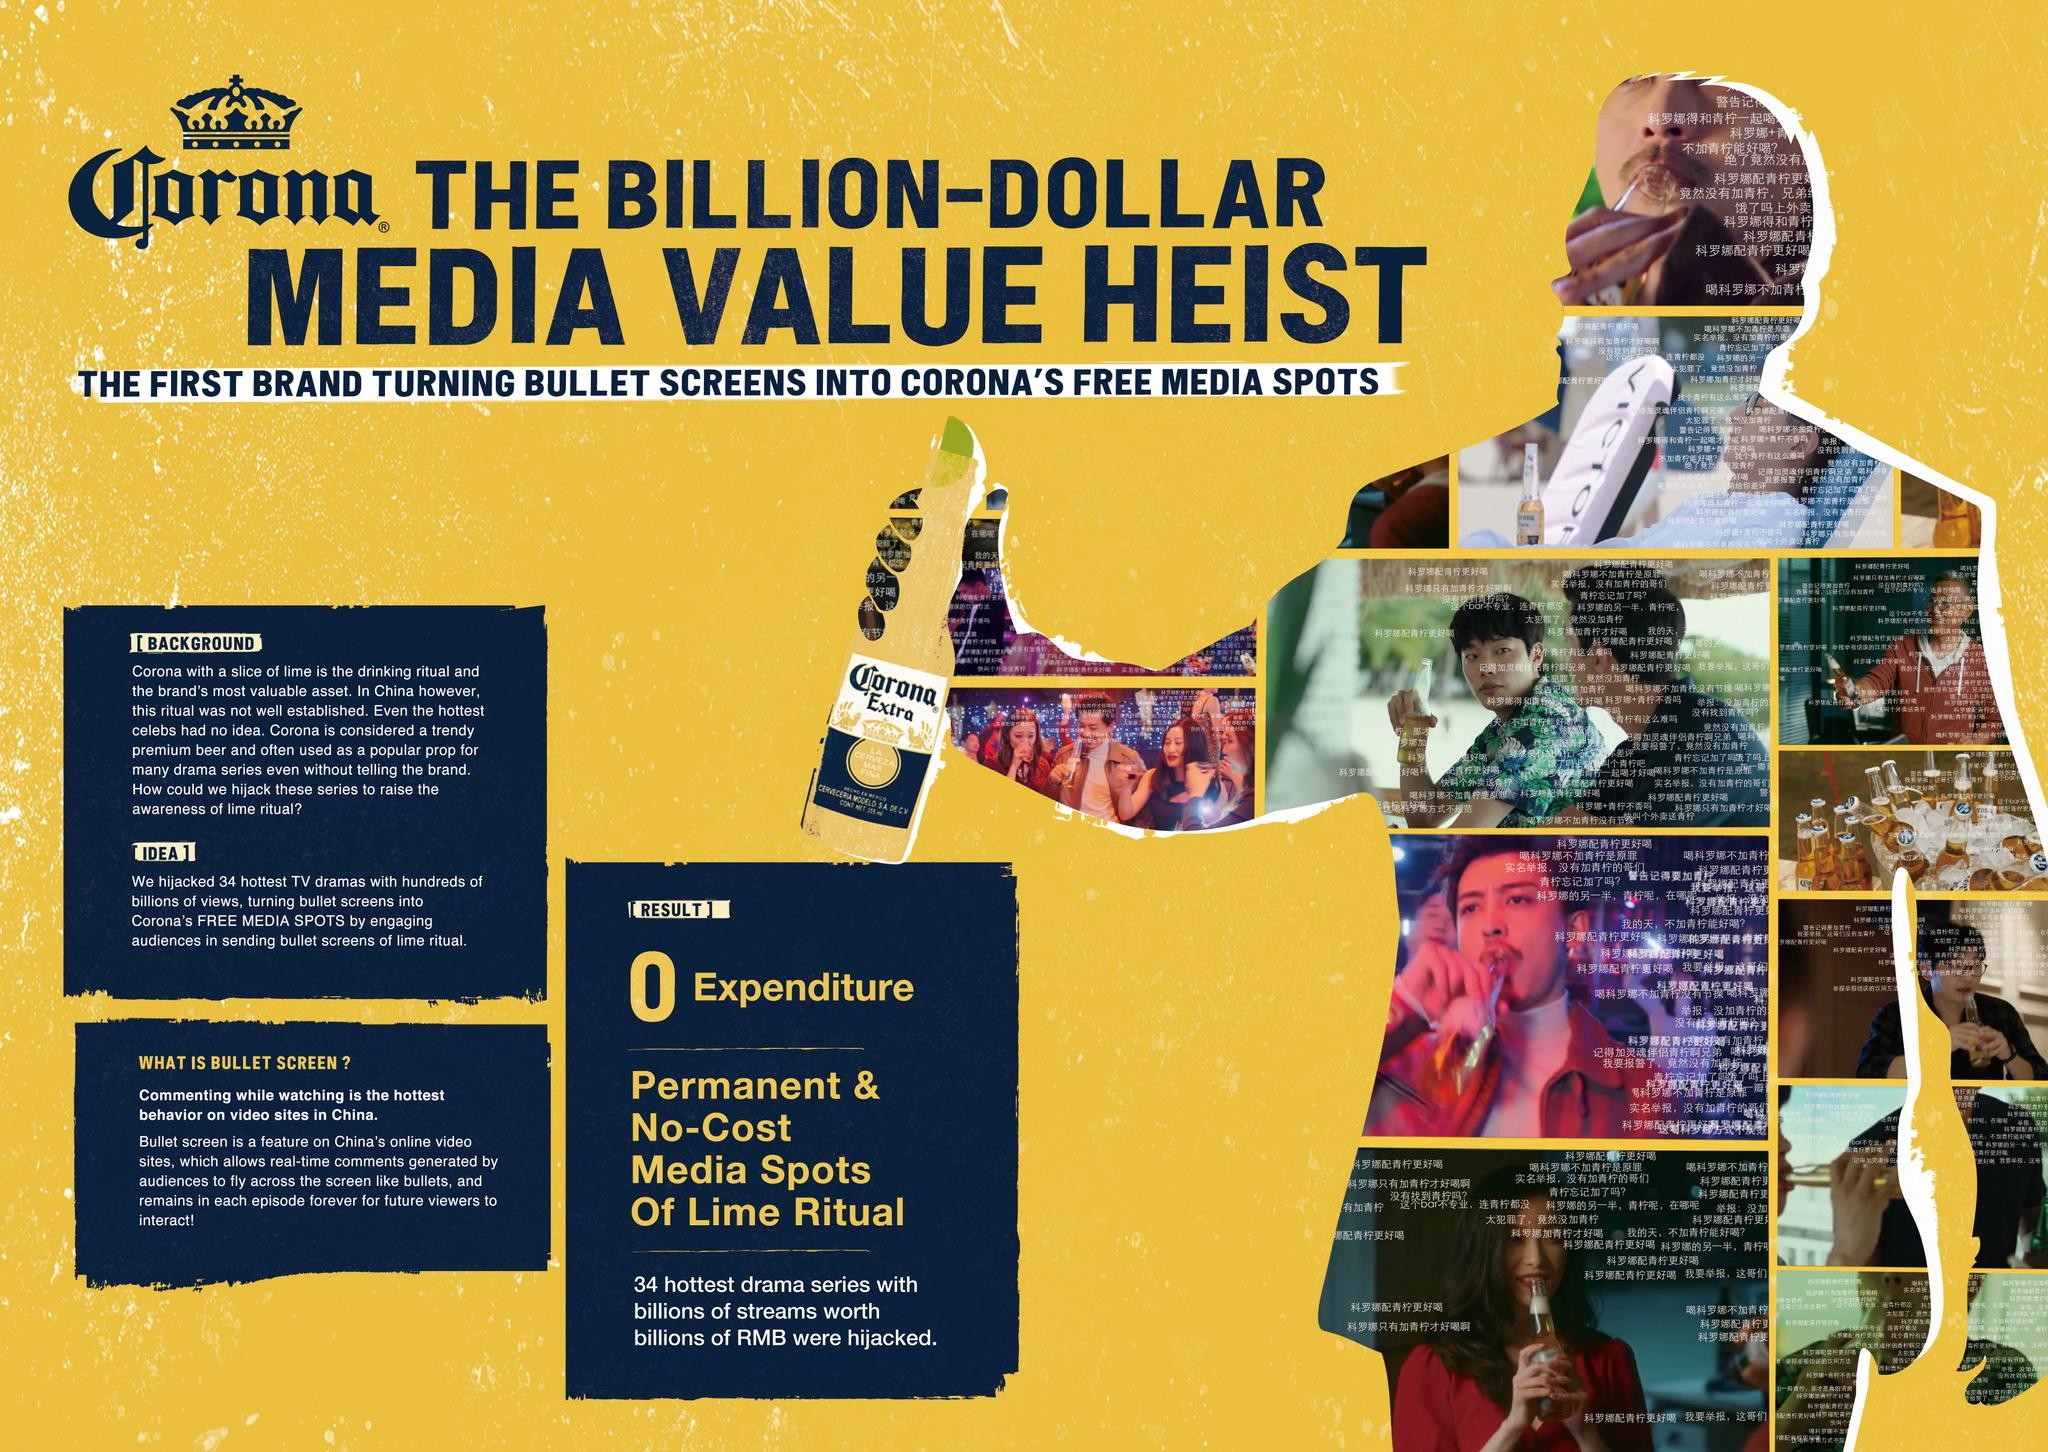 CORONA: THE BILLION-DOLLAR MEDIA VALUE HEIST